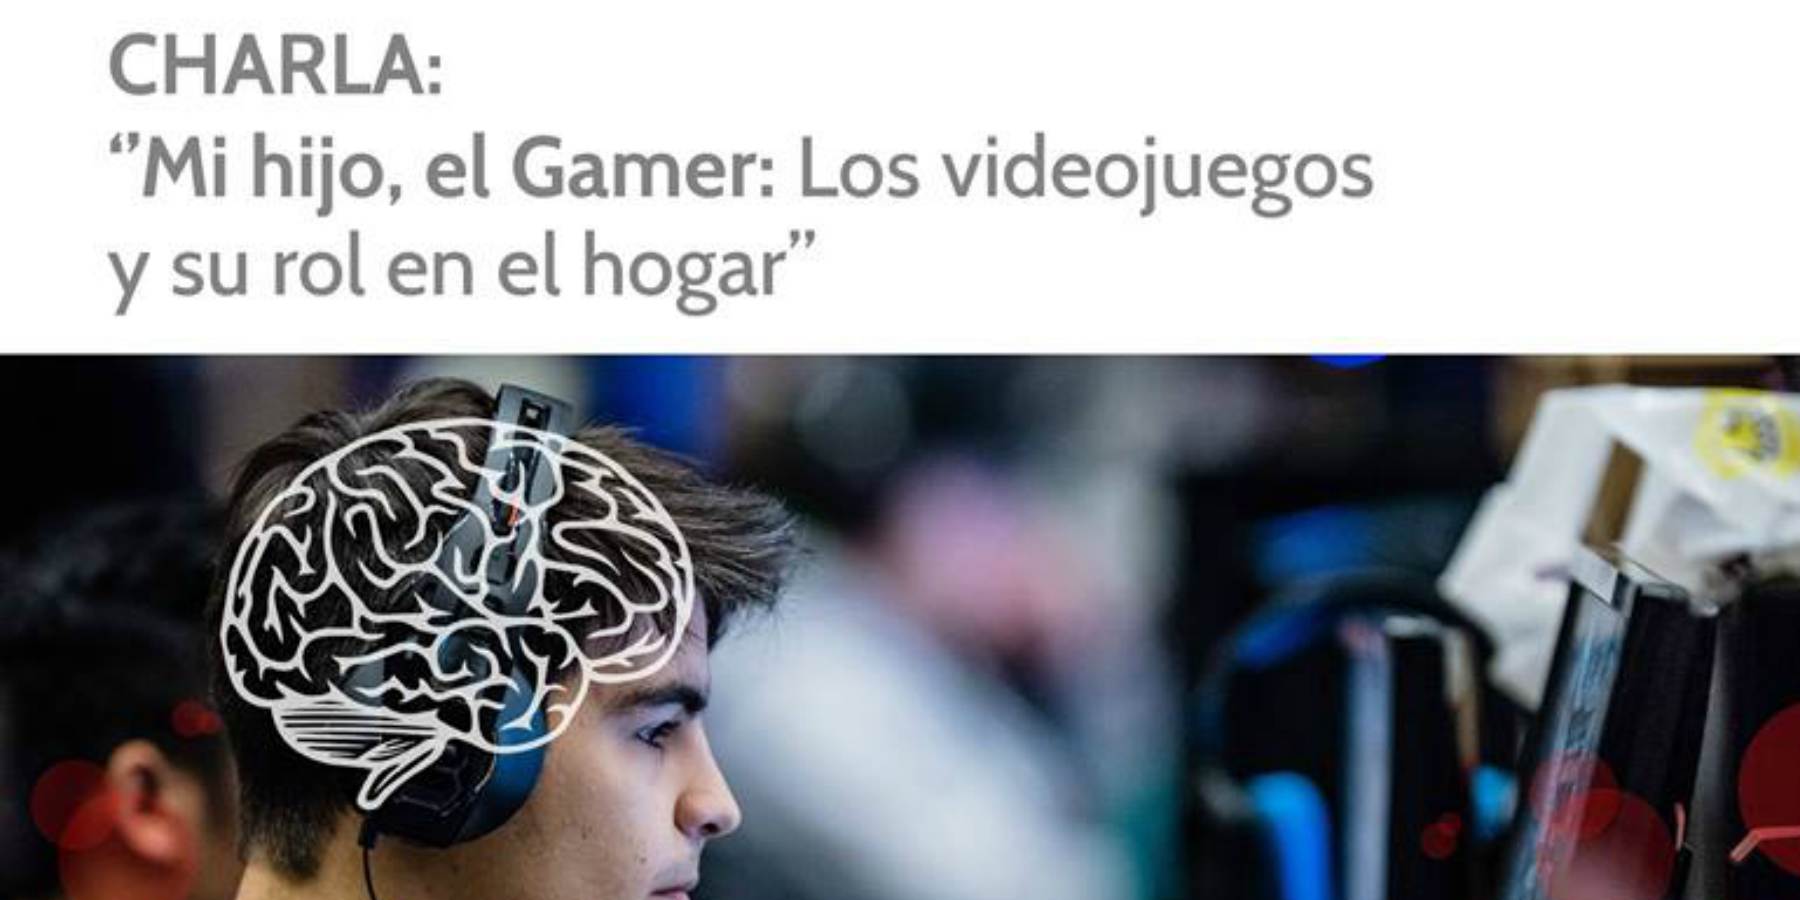 APDEV presenta: "Mi hijo el Gamer, los videojuegos y su rol en el hogar"